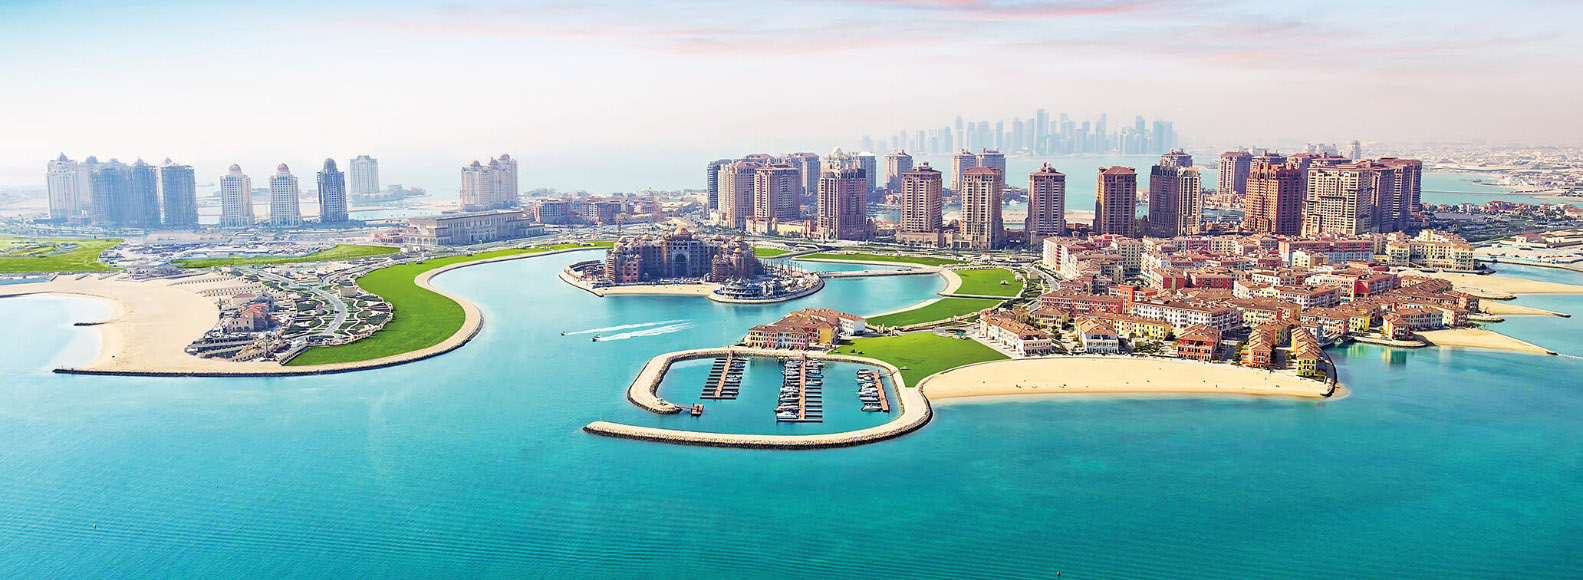 Partenariat entre le Qatar National Tourism Council et l'Organisation mondiale du tourisme